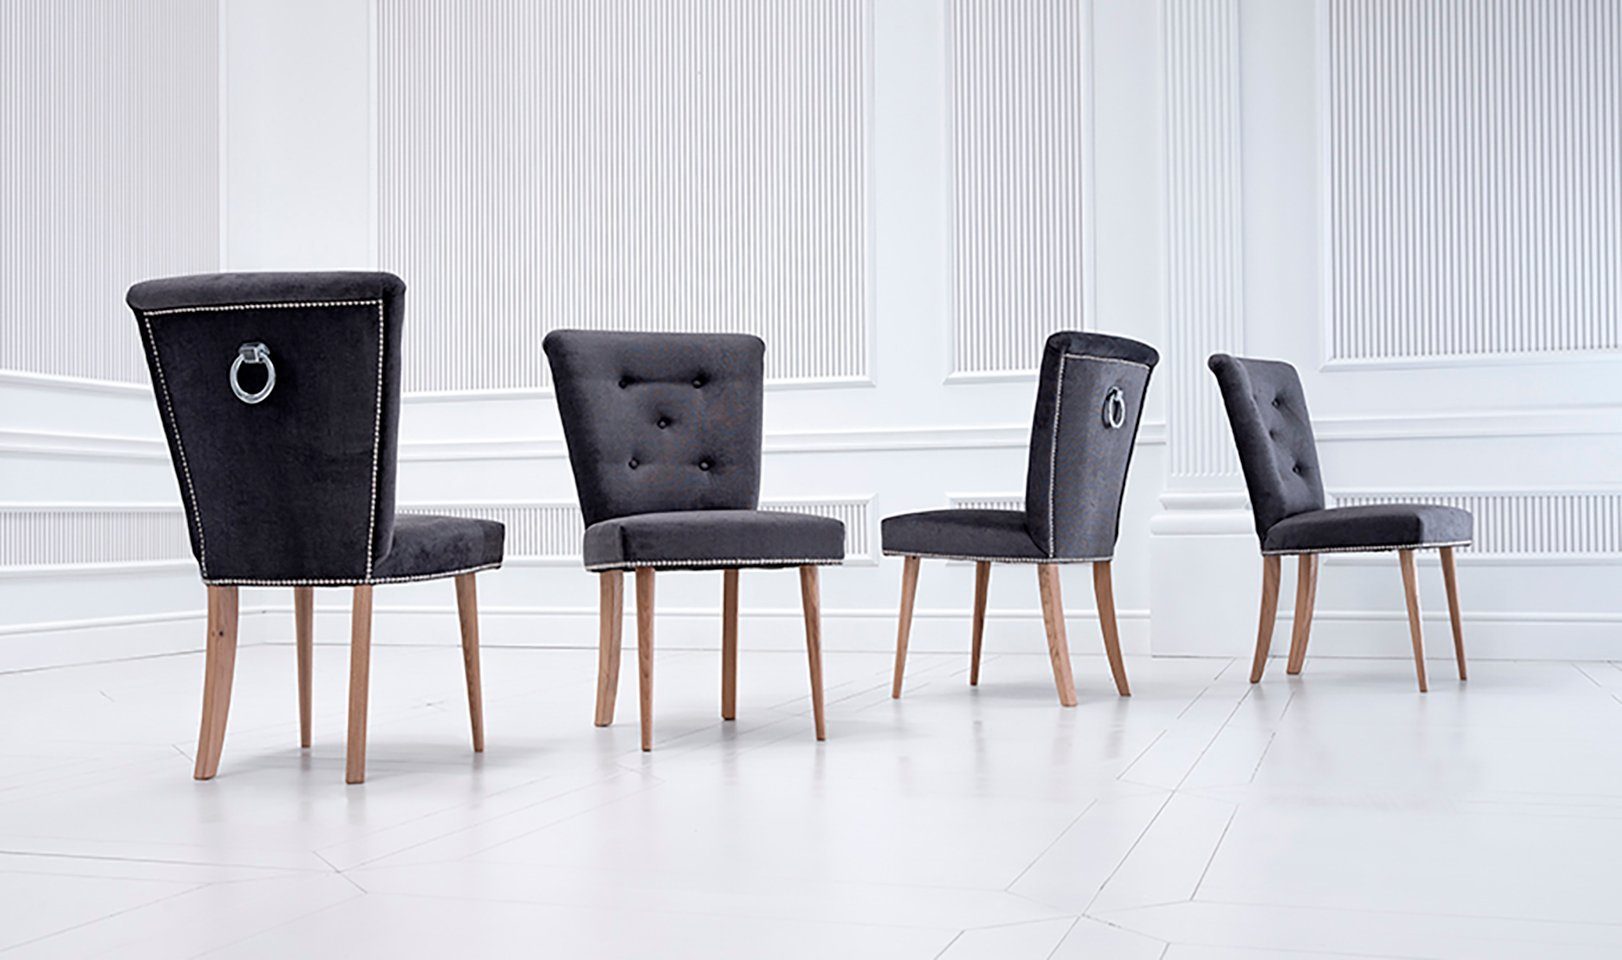 Jafra Esszimmer-Set Chesterfield Set Gruppe Lehnstuhl 4x Stühle Garnitur Polster Samt, (Vier Stühle), Made in Europe